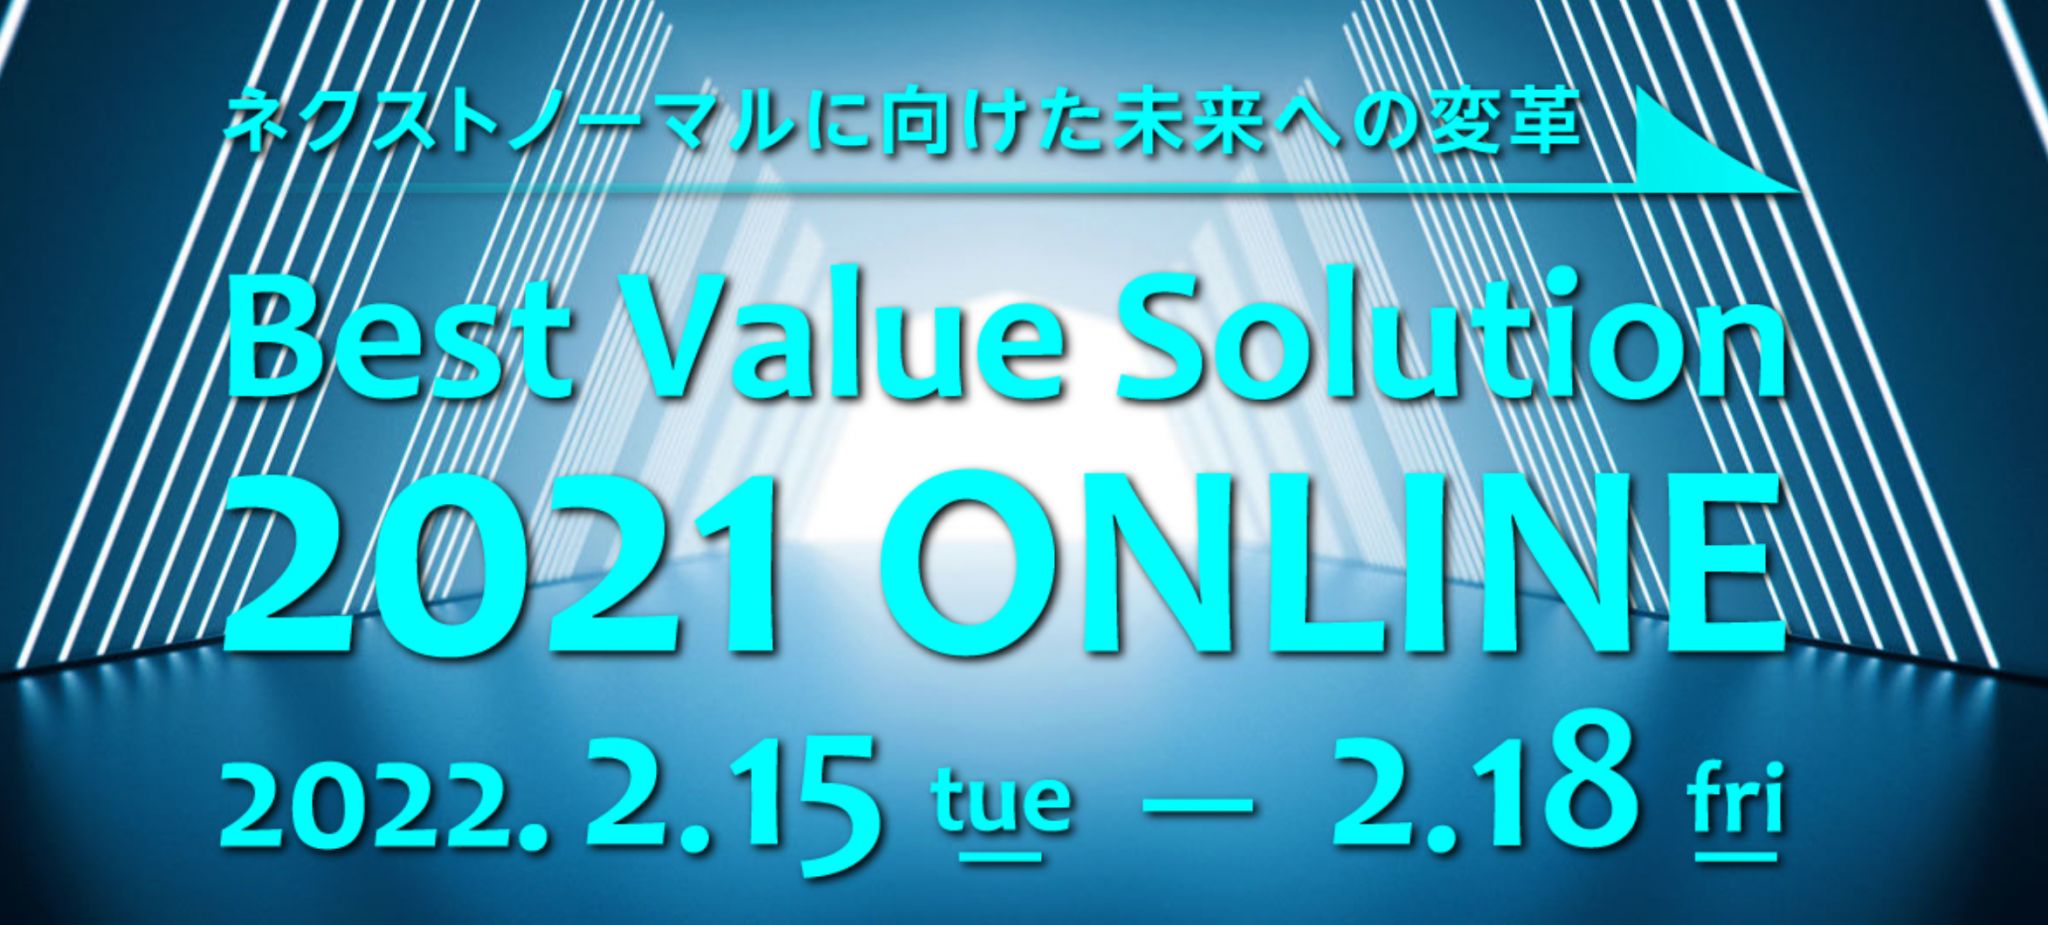 ネクストノーマルに向けた未来への変革「Best Value Solution 2021 ONLINE」